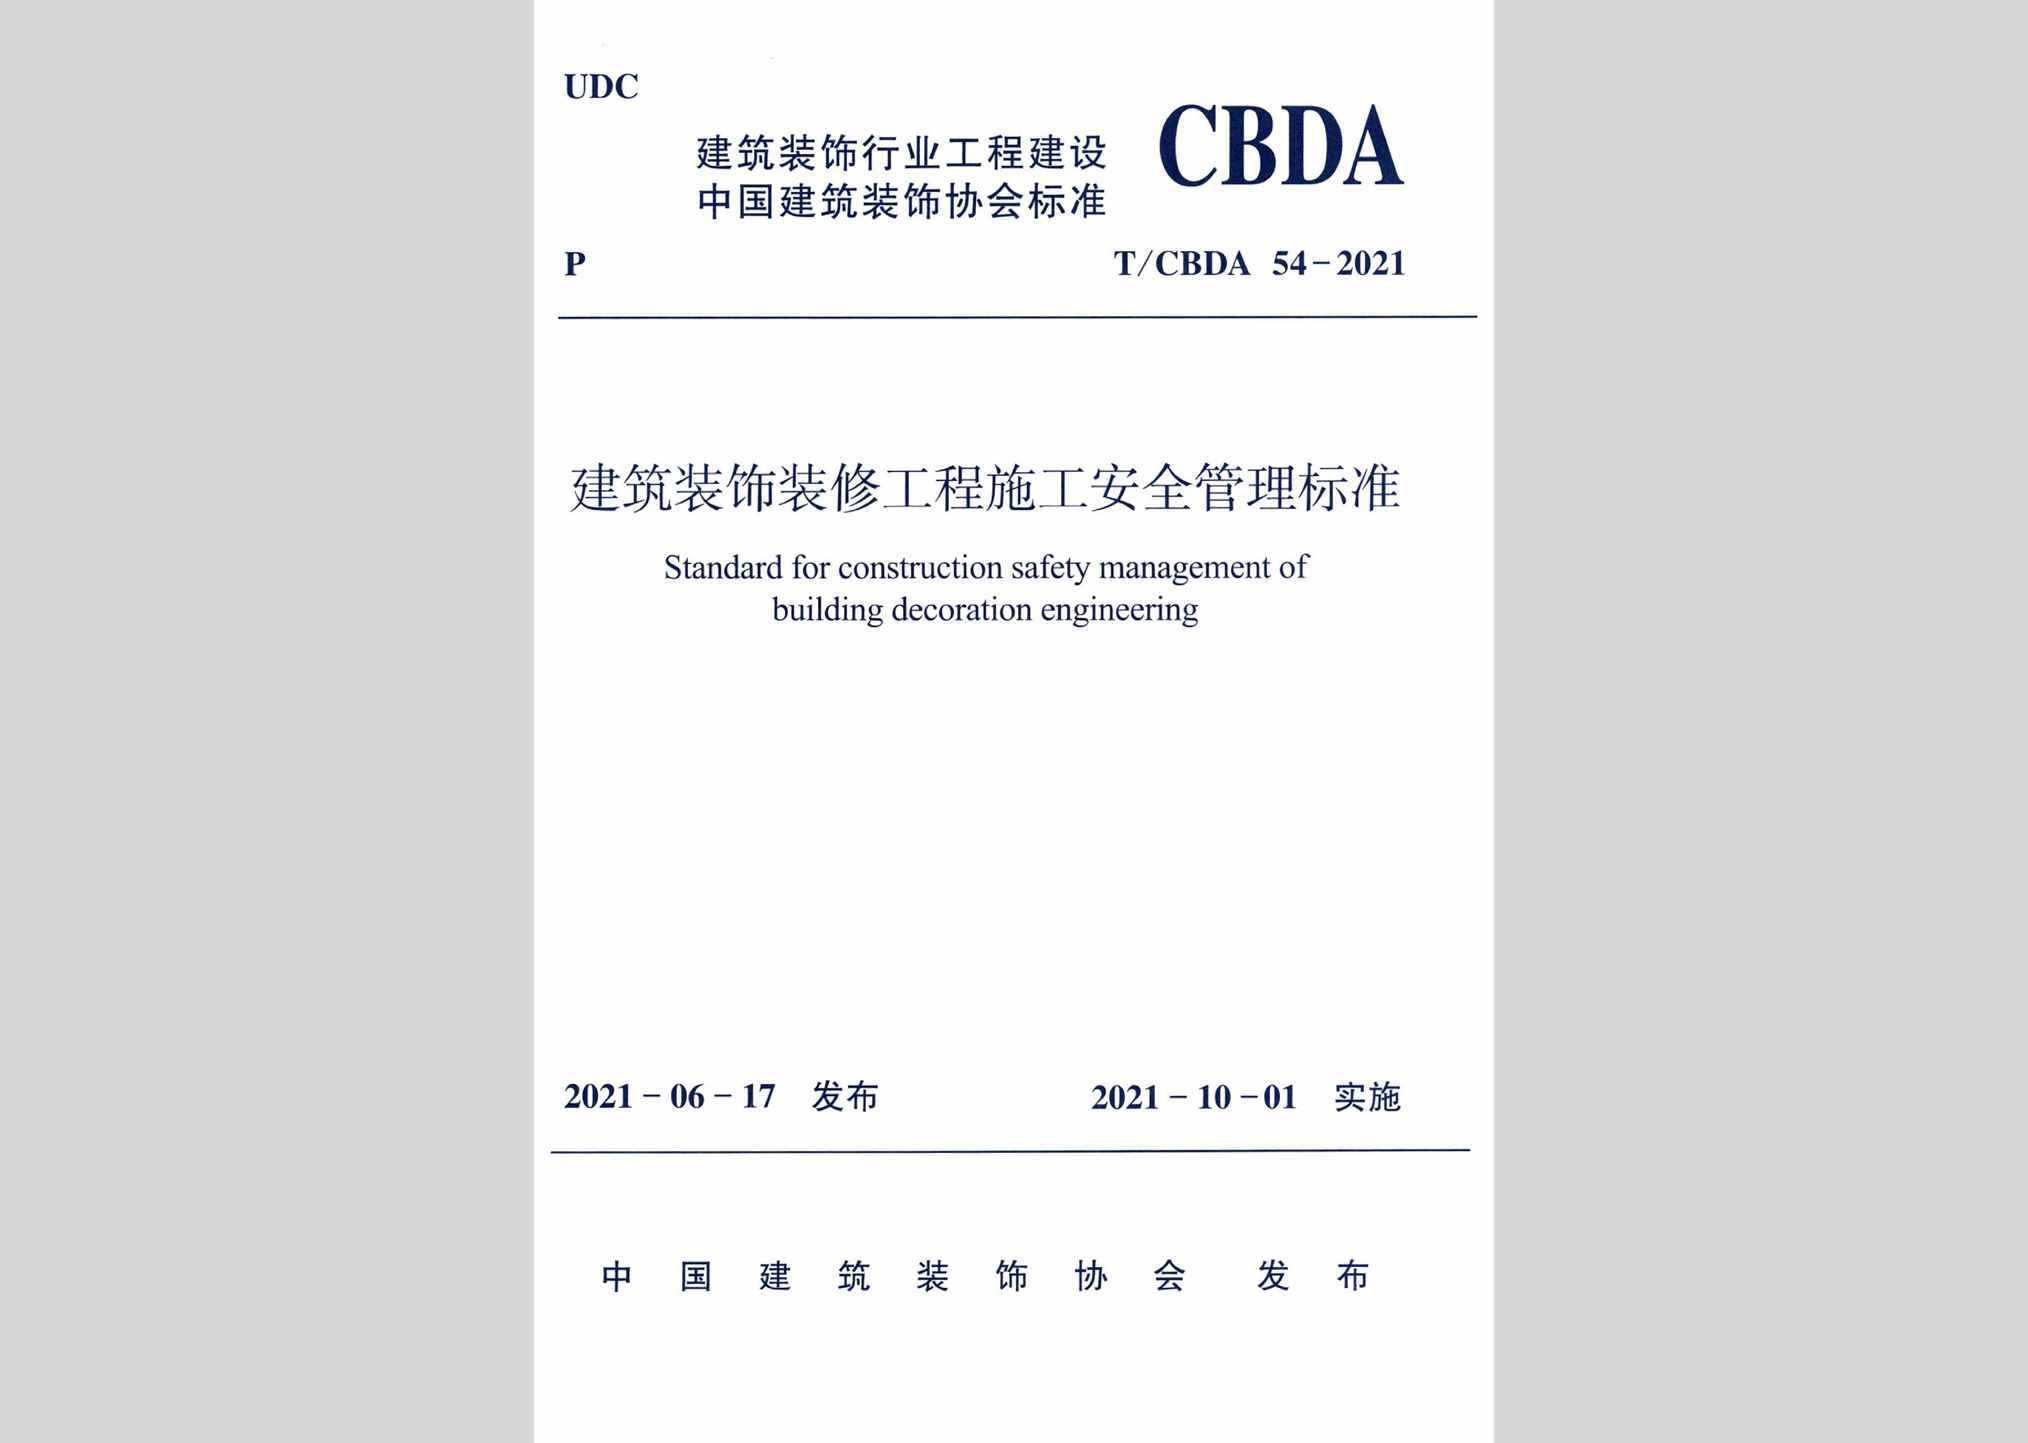 T/CBDA54-2021：建筑装饰装修工程施工安全管理标准